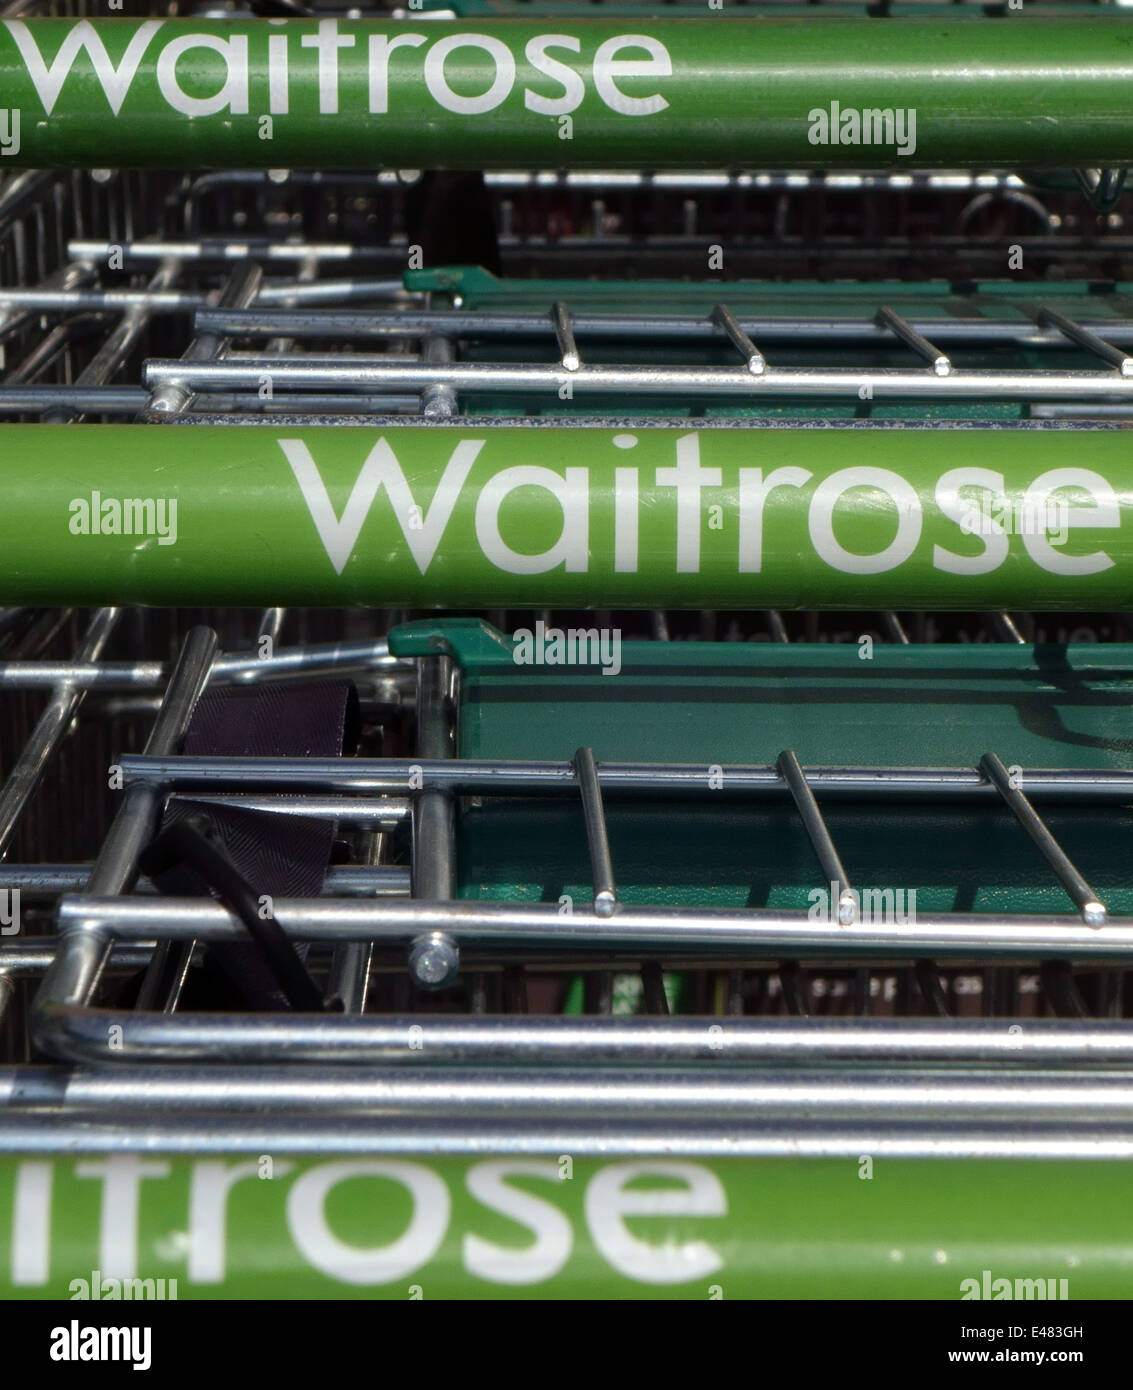 Waitrose carrelli per supermercati, Somerset, Inghilterra Foto Stock